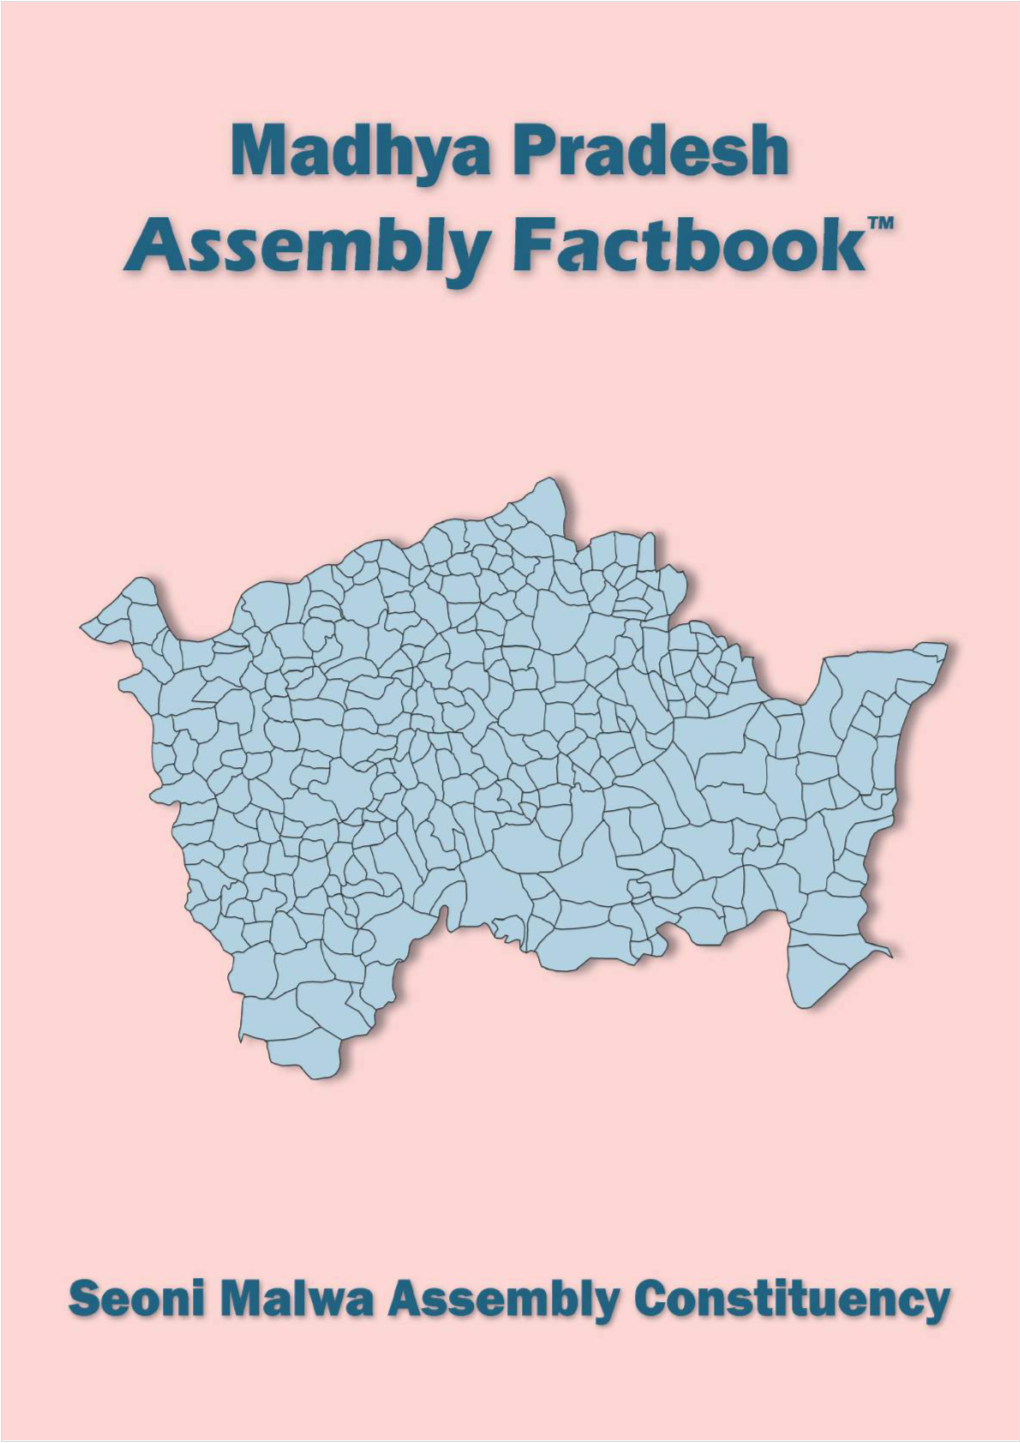 Seoni Malwa Assembly Madhya Pradesh Factbook